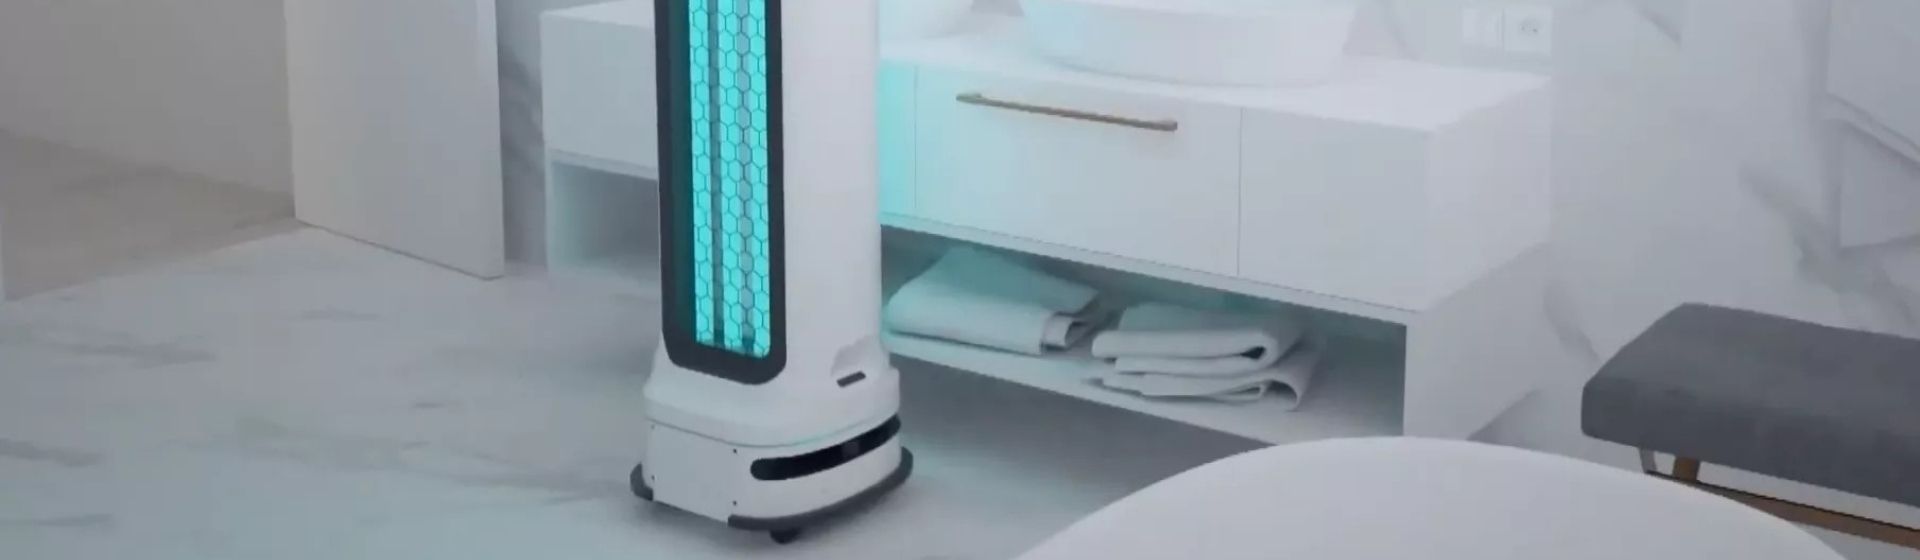 CES 2021: LG apresenta UV-C Light Robot, robô de luz UV que percorre espaços eliminando germes